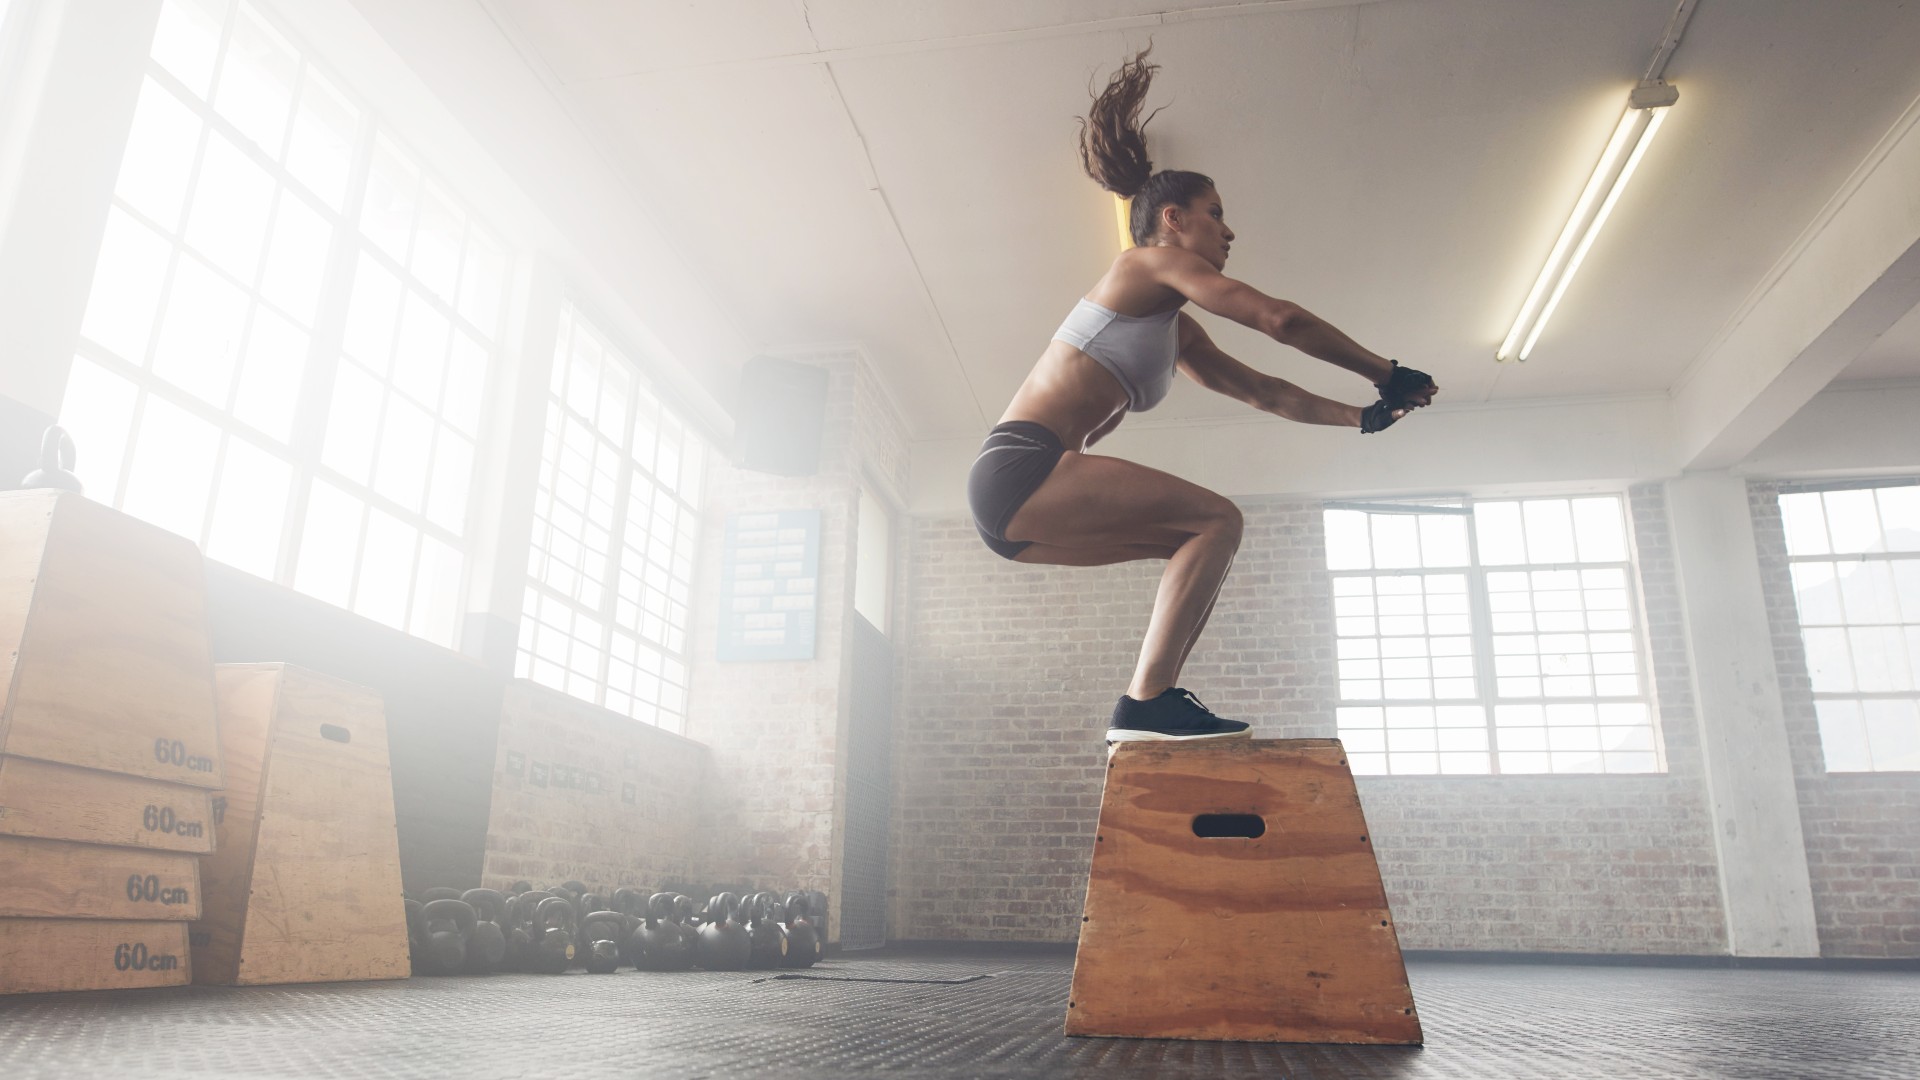 Bir depo spor salonunda kutuya atlayarak vücut ağırlığı antrenmanı yapan kadın, her iki ayağıyla bir kutunun üzerine iniyor